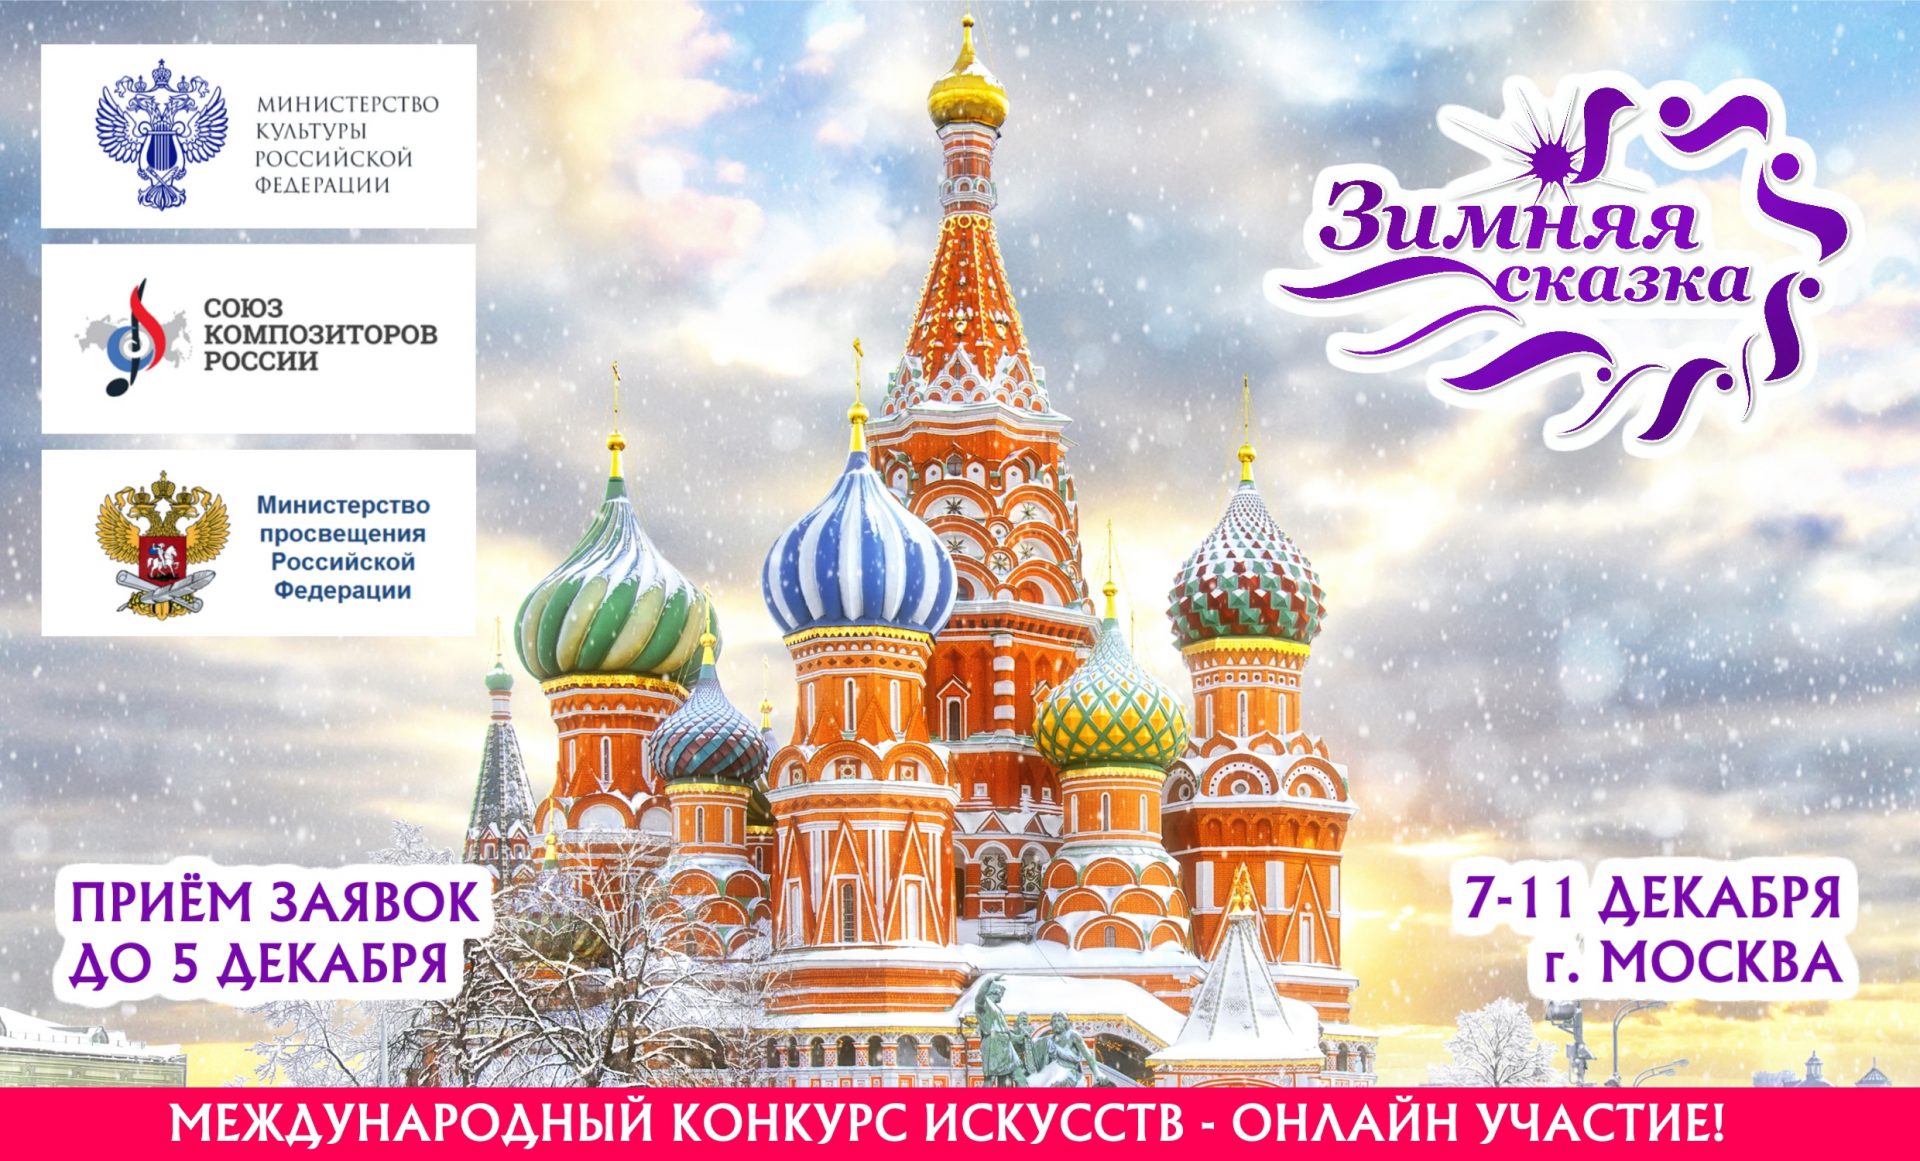 6 апреля какой праздник в россии. Приглашаем к участию. Приглашение в Россию зимой картинки. Праздник 4 ноября 2022 православный картинки. Праздники в ноябре картинки для детей.